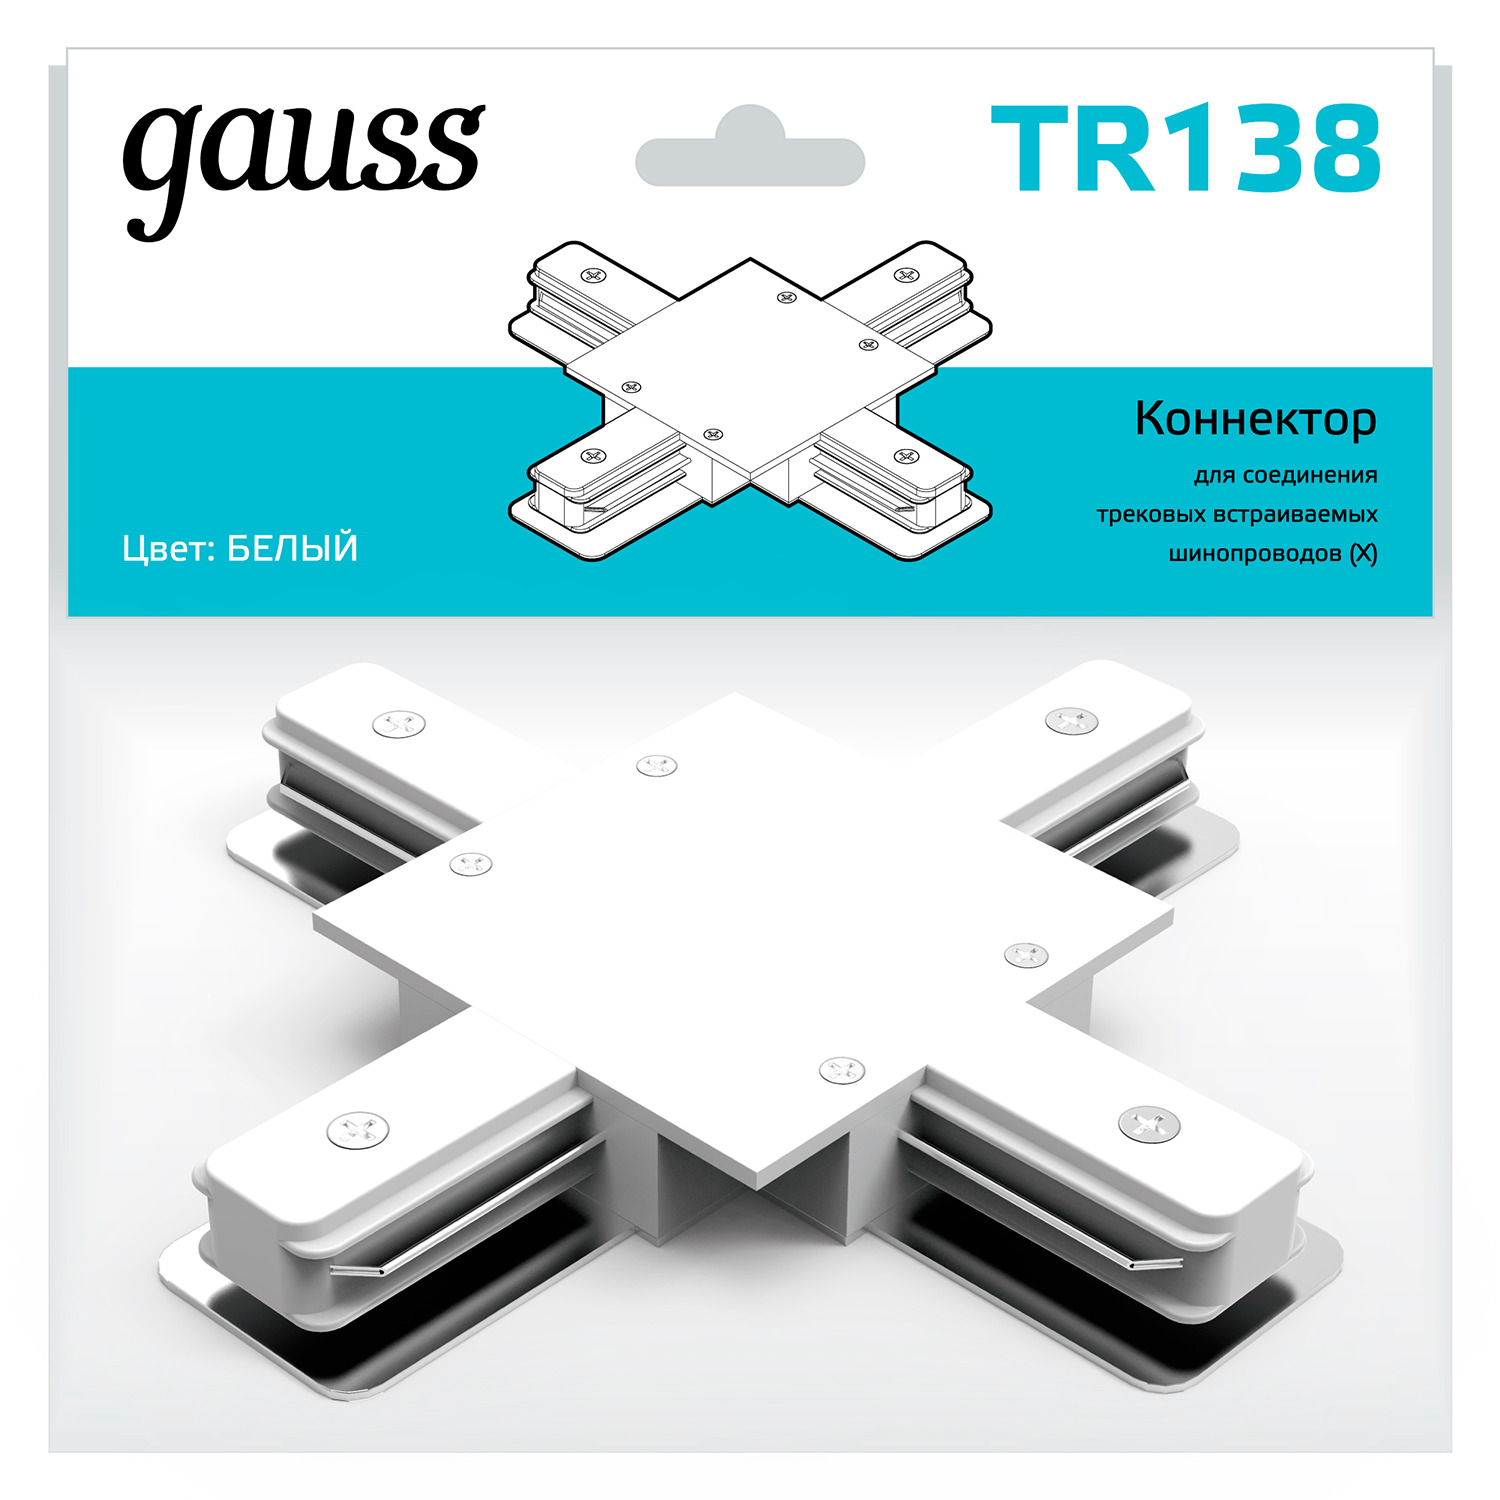 Коннектор Gauss для встраиваемых трековых шинопроводов (+) белый коннектор gauss для встраиваемых трековых шинопроводов гибкий i